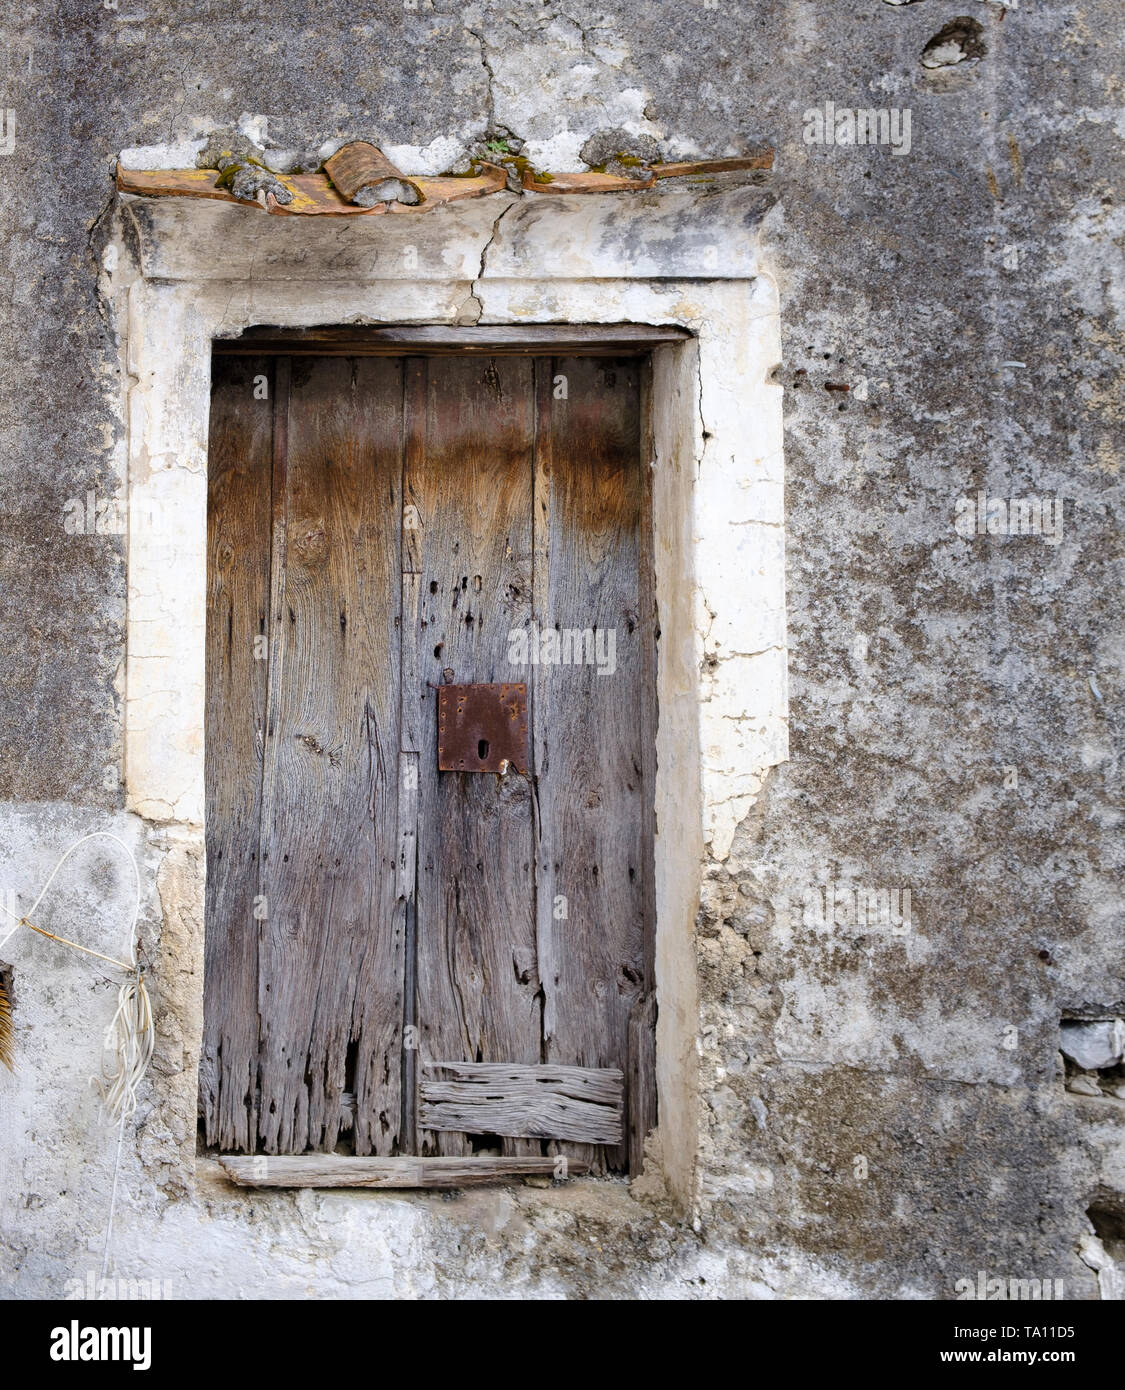 Antiguas desgastadas ruinoso capeado desapareció de la puerta de madera con cerradura oxidada Foto de stock